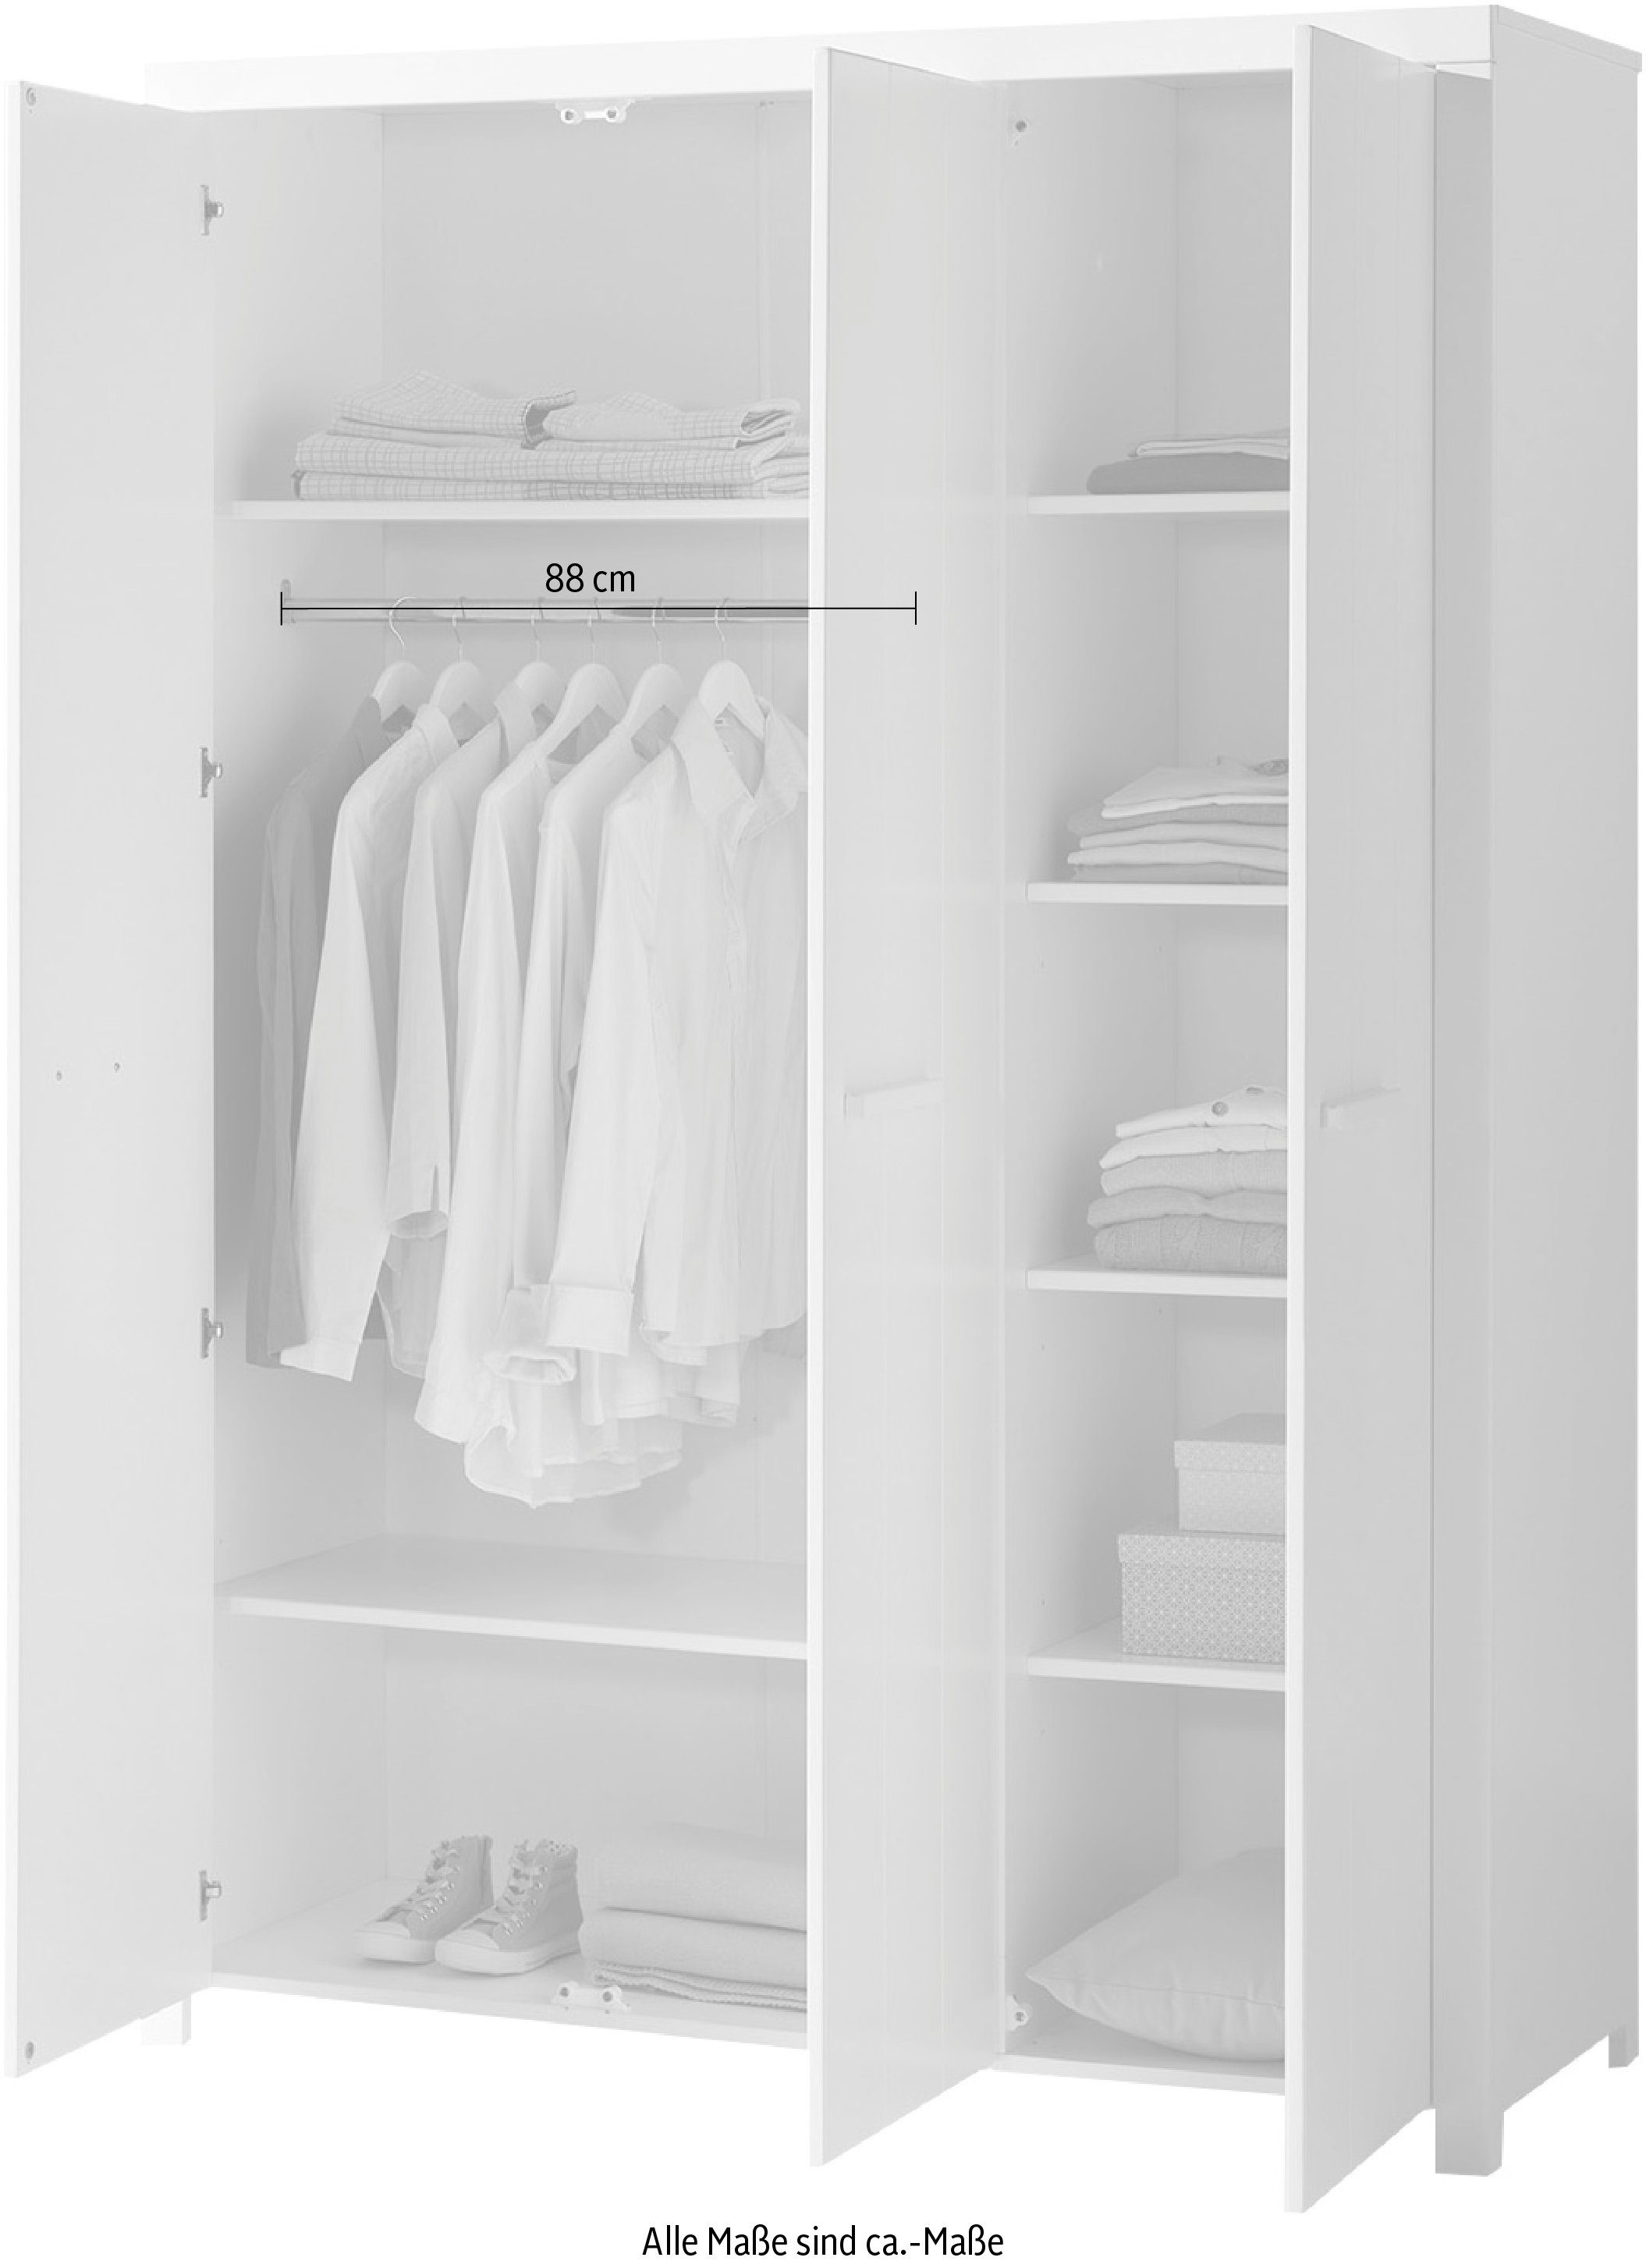 Wäscheeinteilung, Ausf. inkl. Geräumiger Vipack weiß Kleiderschrank lackiert 3-trg.